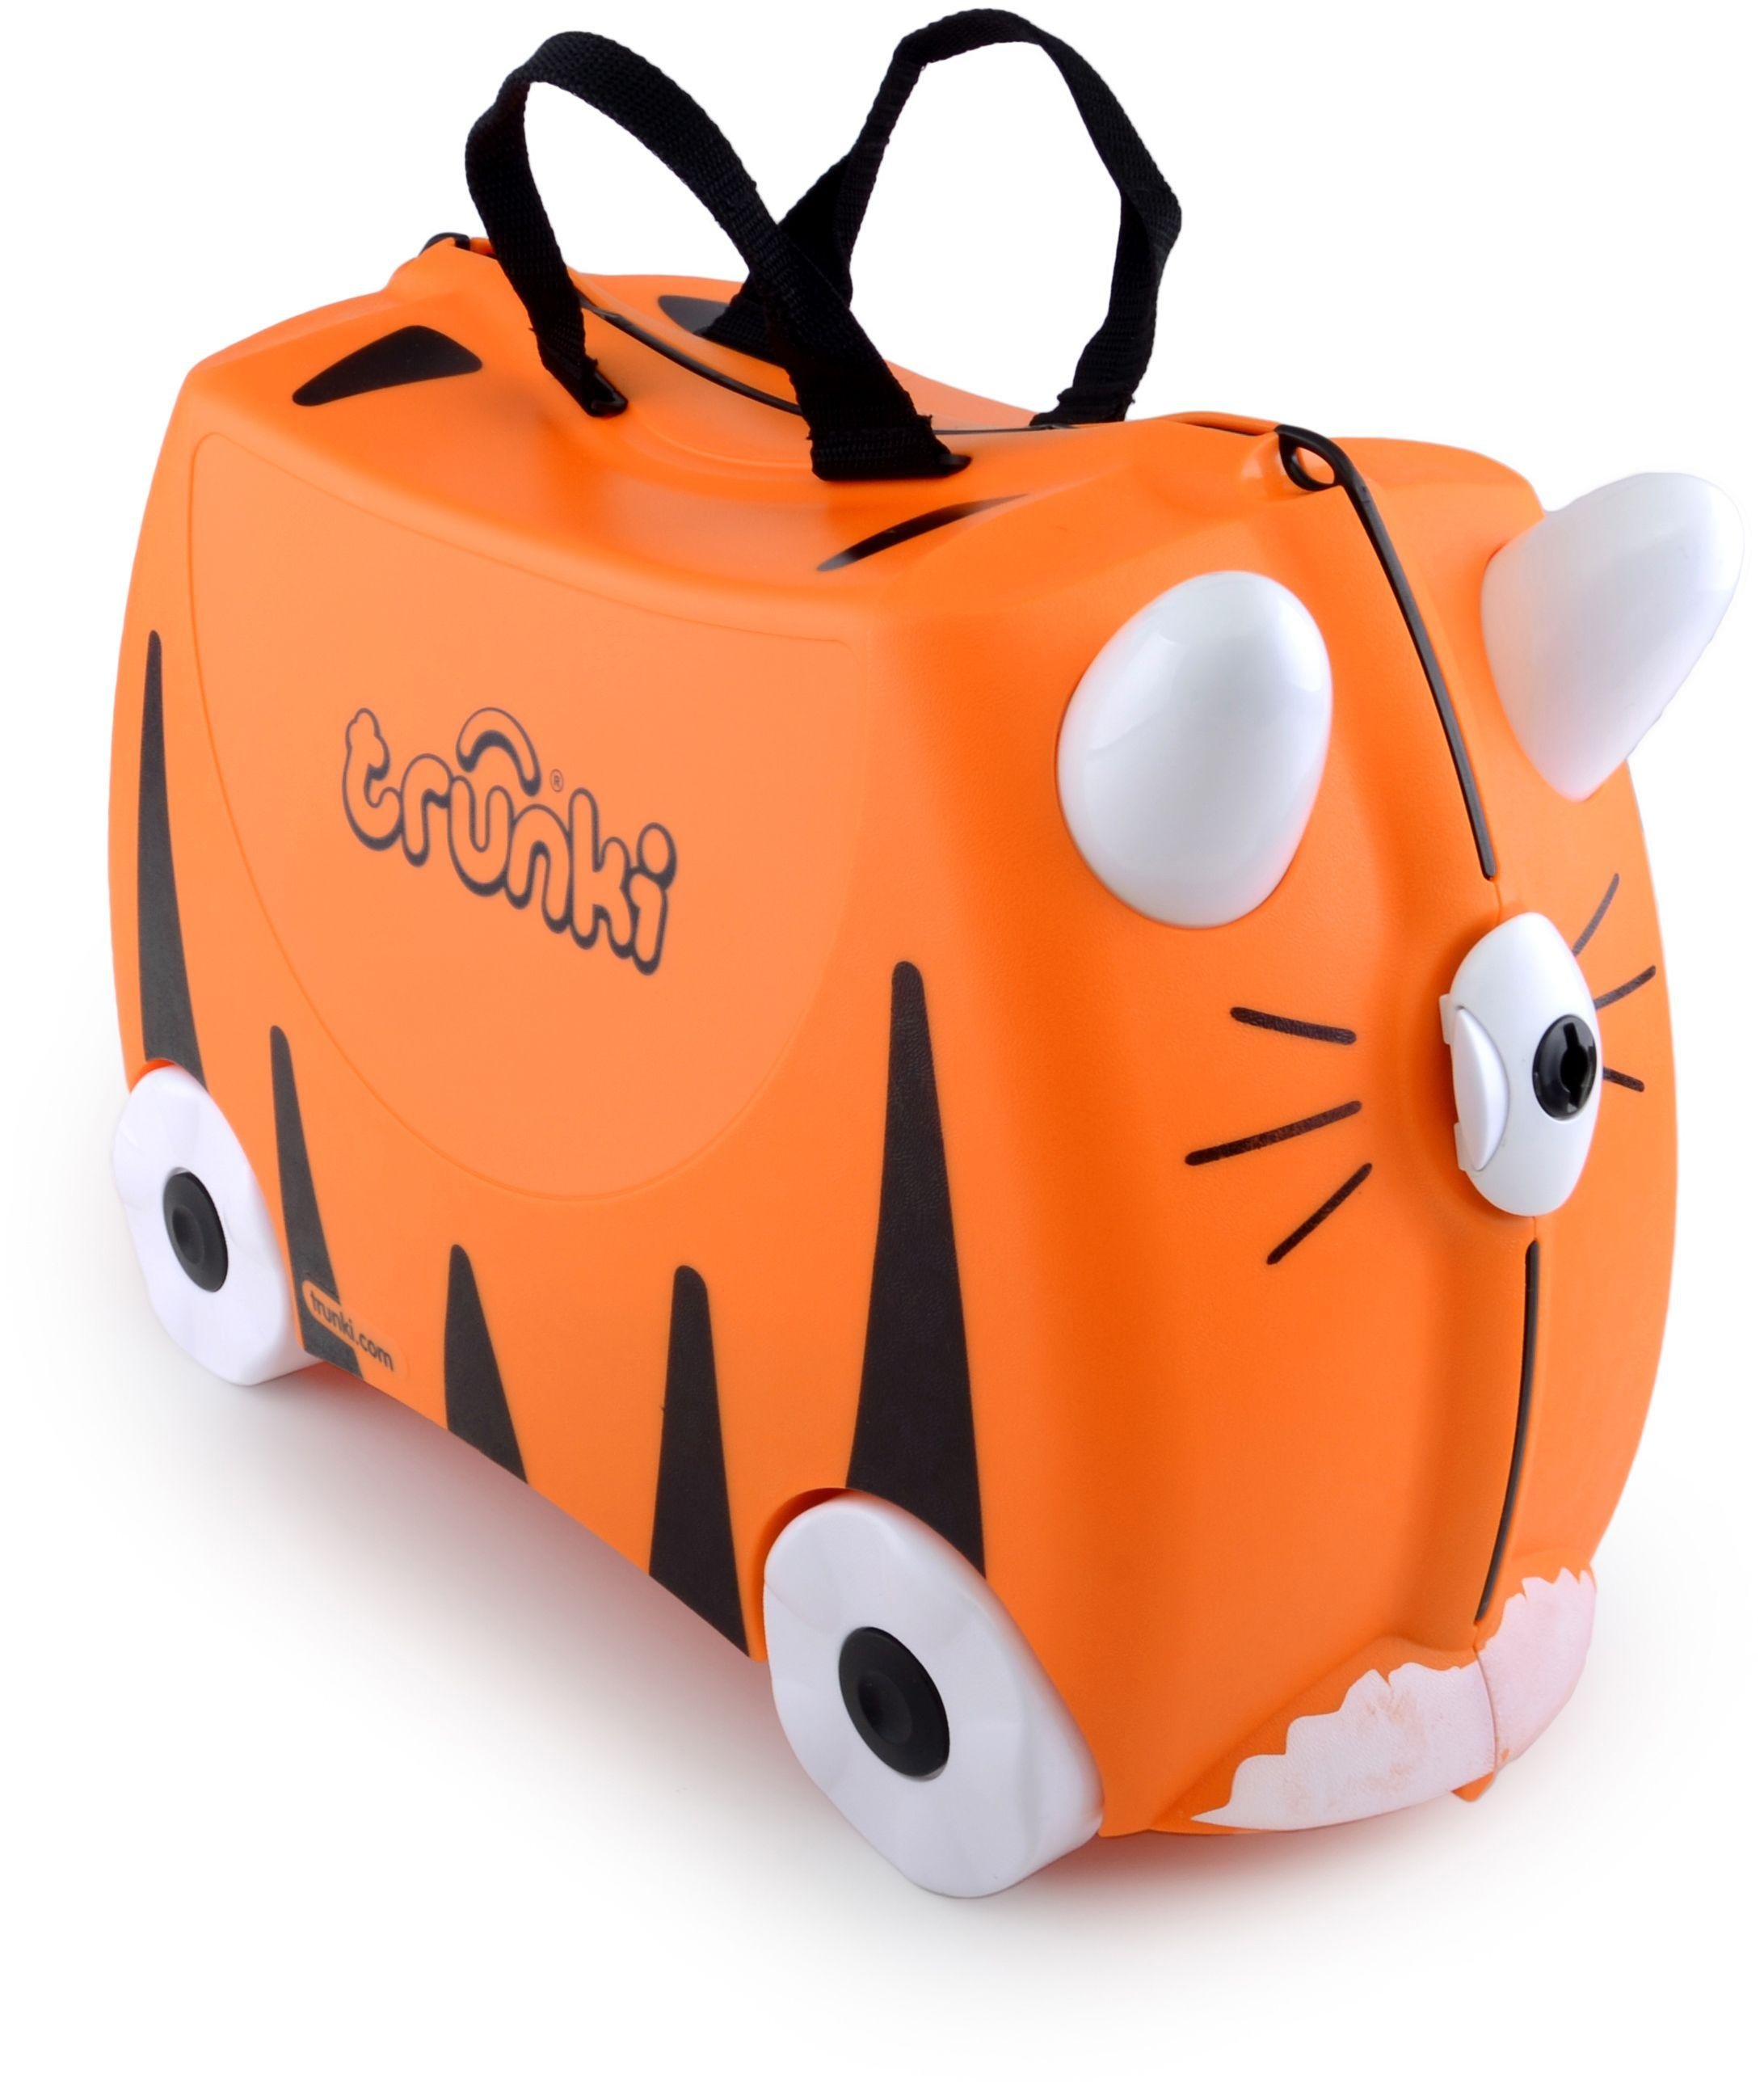 Trunki Tipu Tiger 4 Wheel Hard Ride On Suitcase - Orange